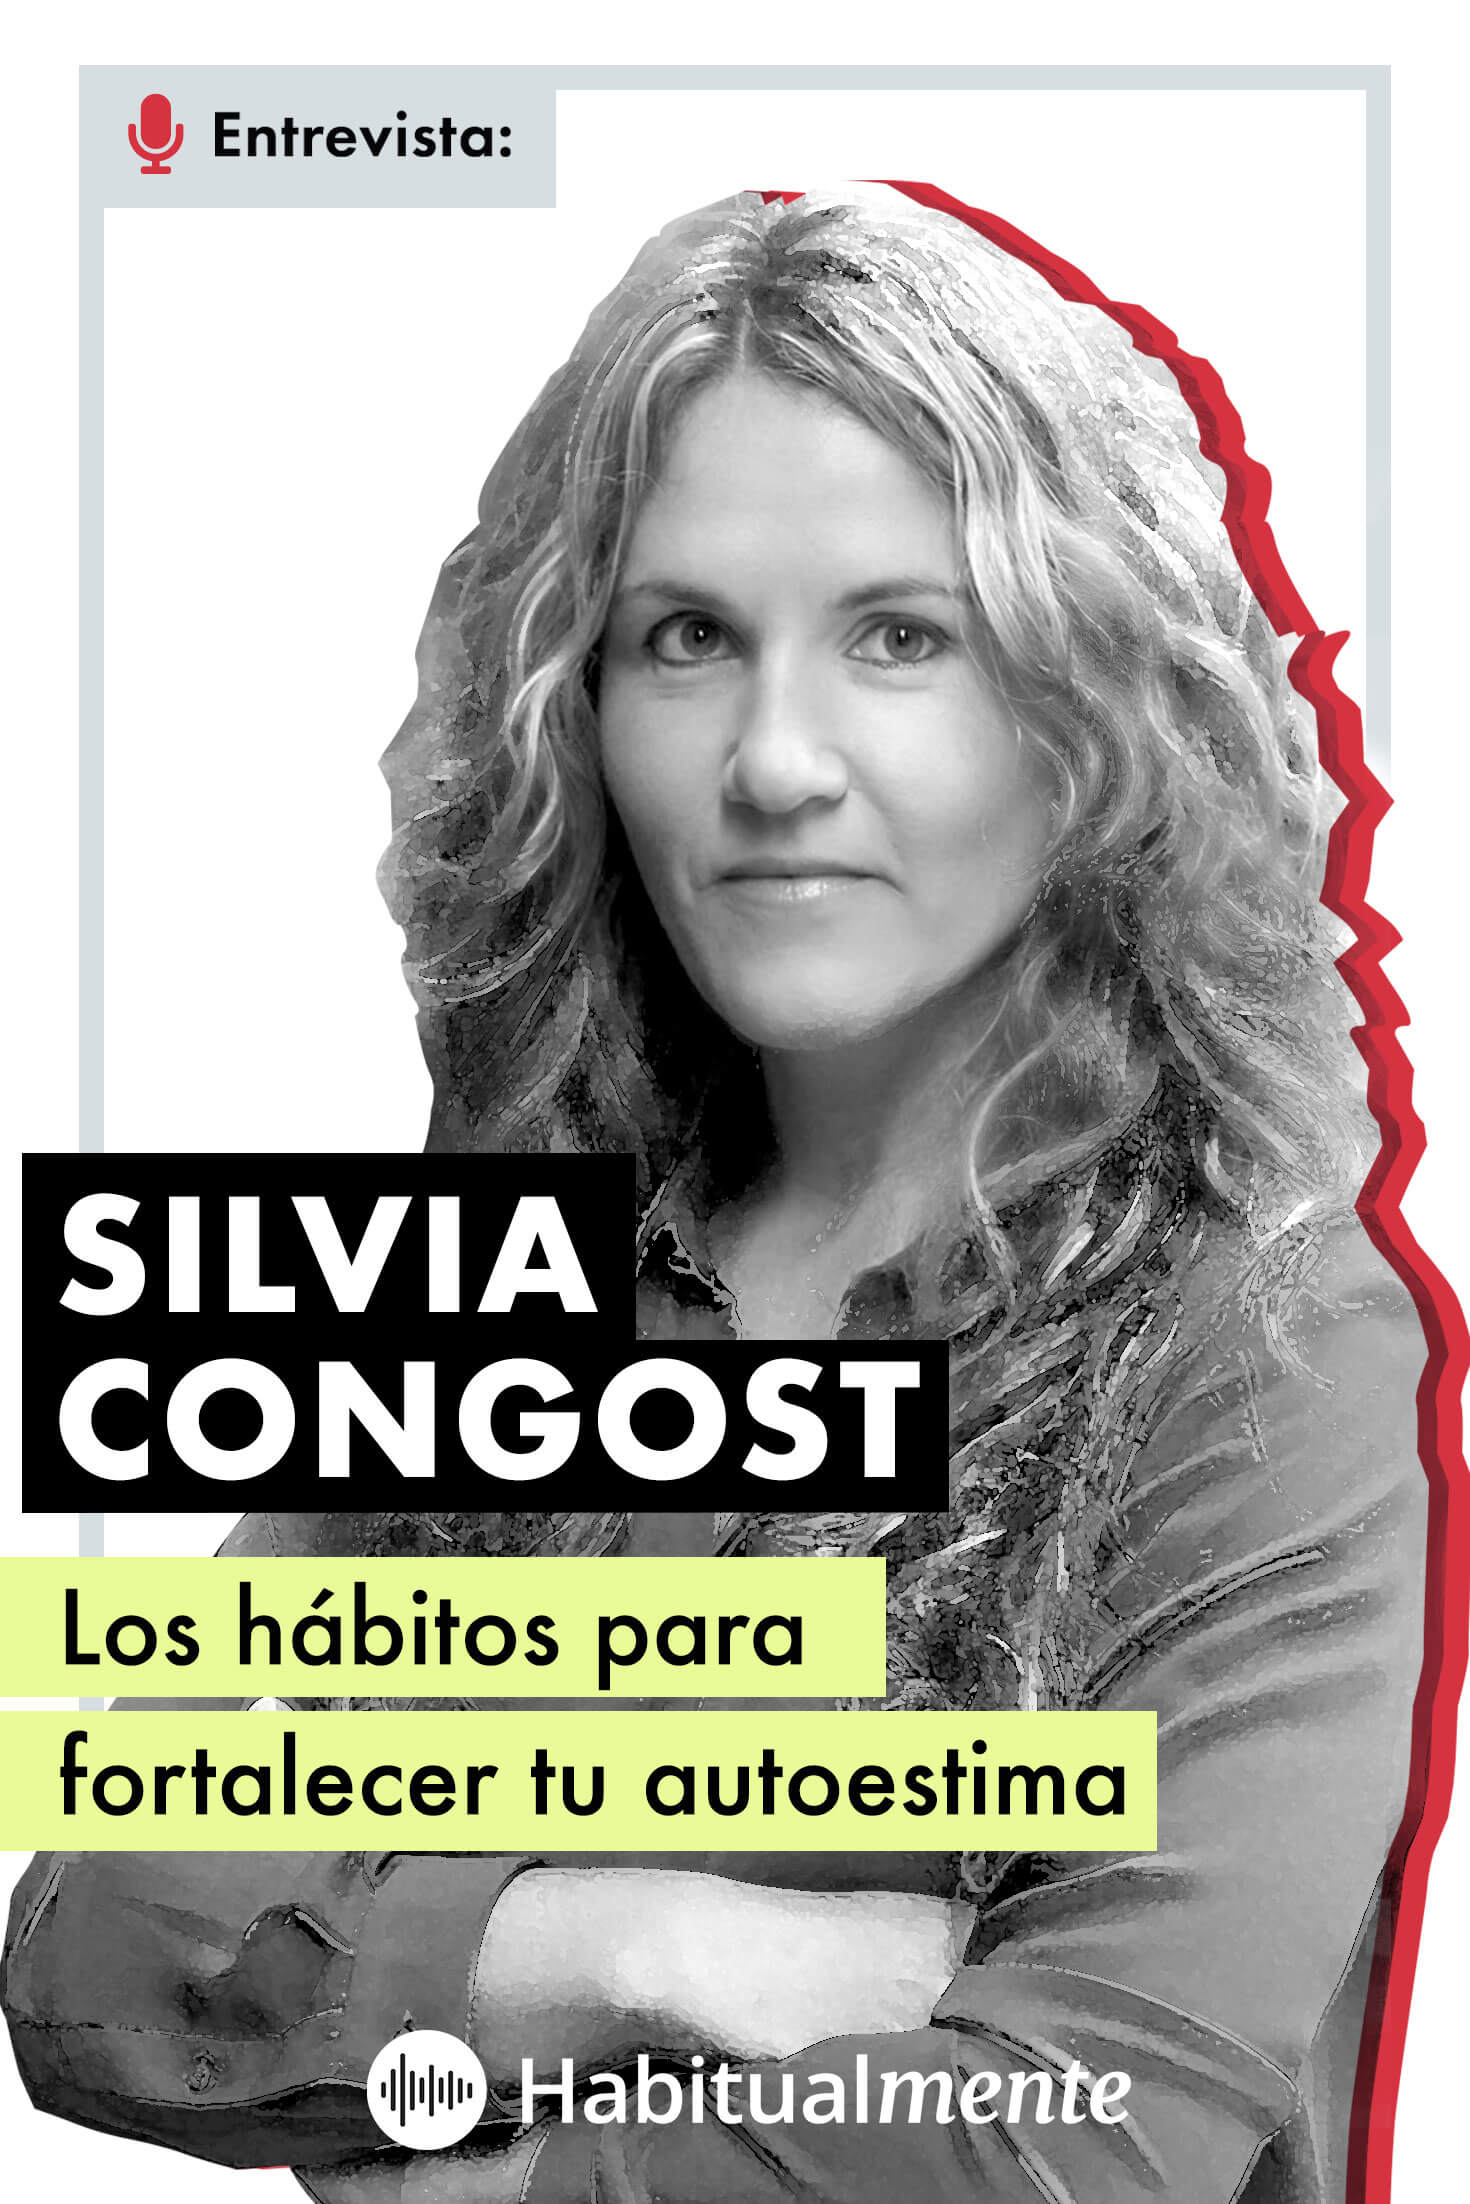 A solas - Silvia Congost, psicóloga experta en dependencia